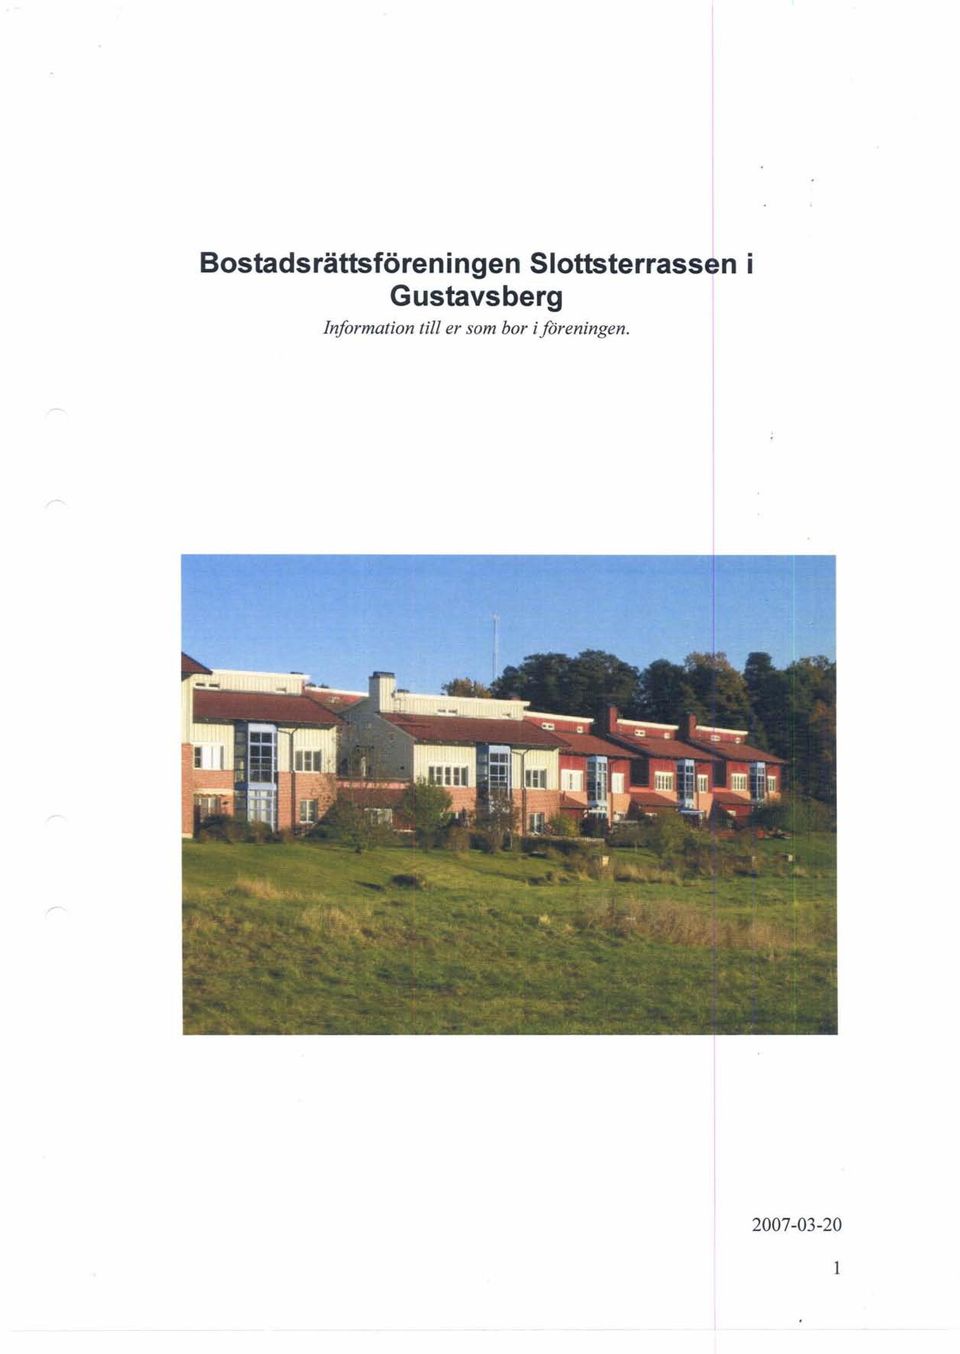 Gustavsberg Information